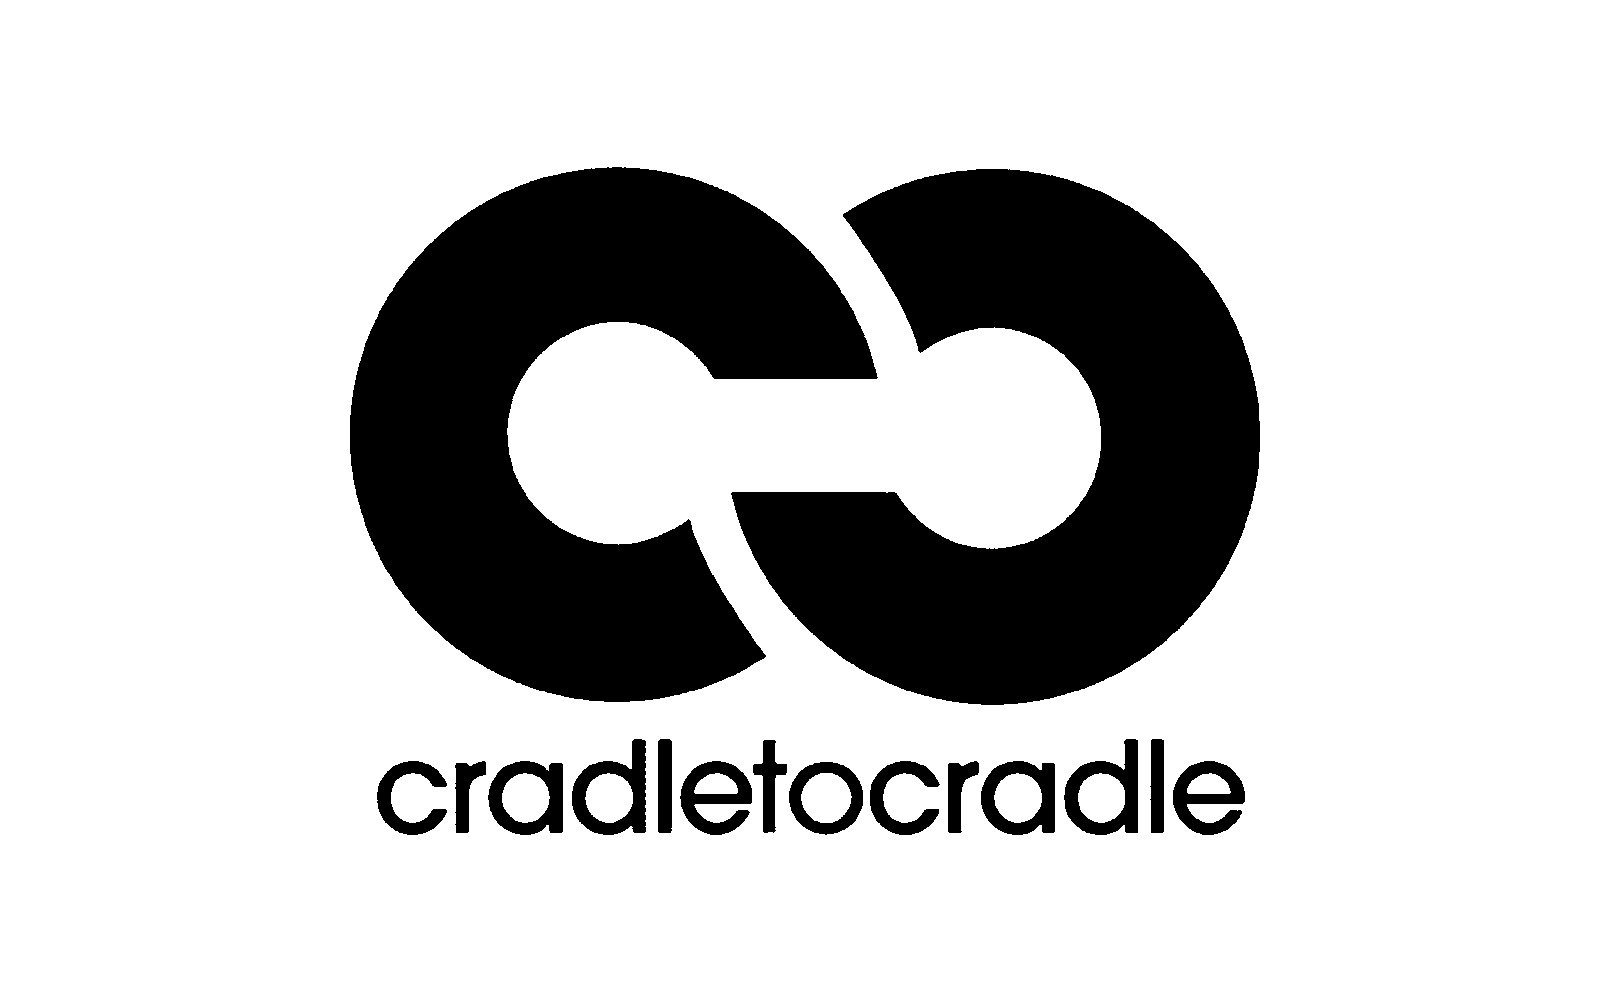 cradle-to-cradle.jpg